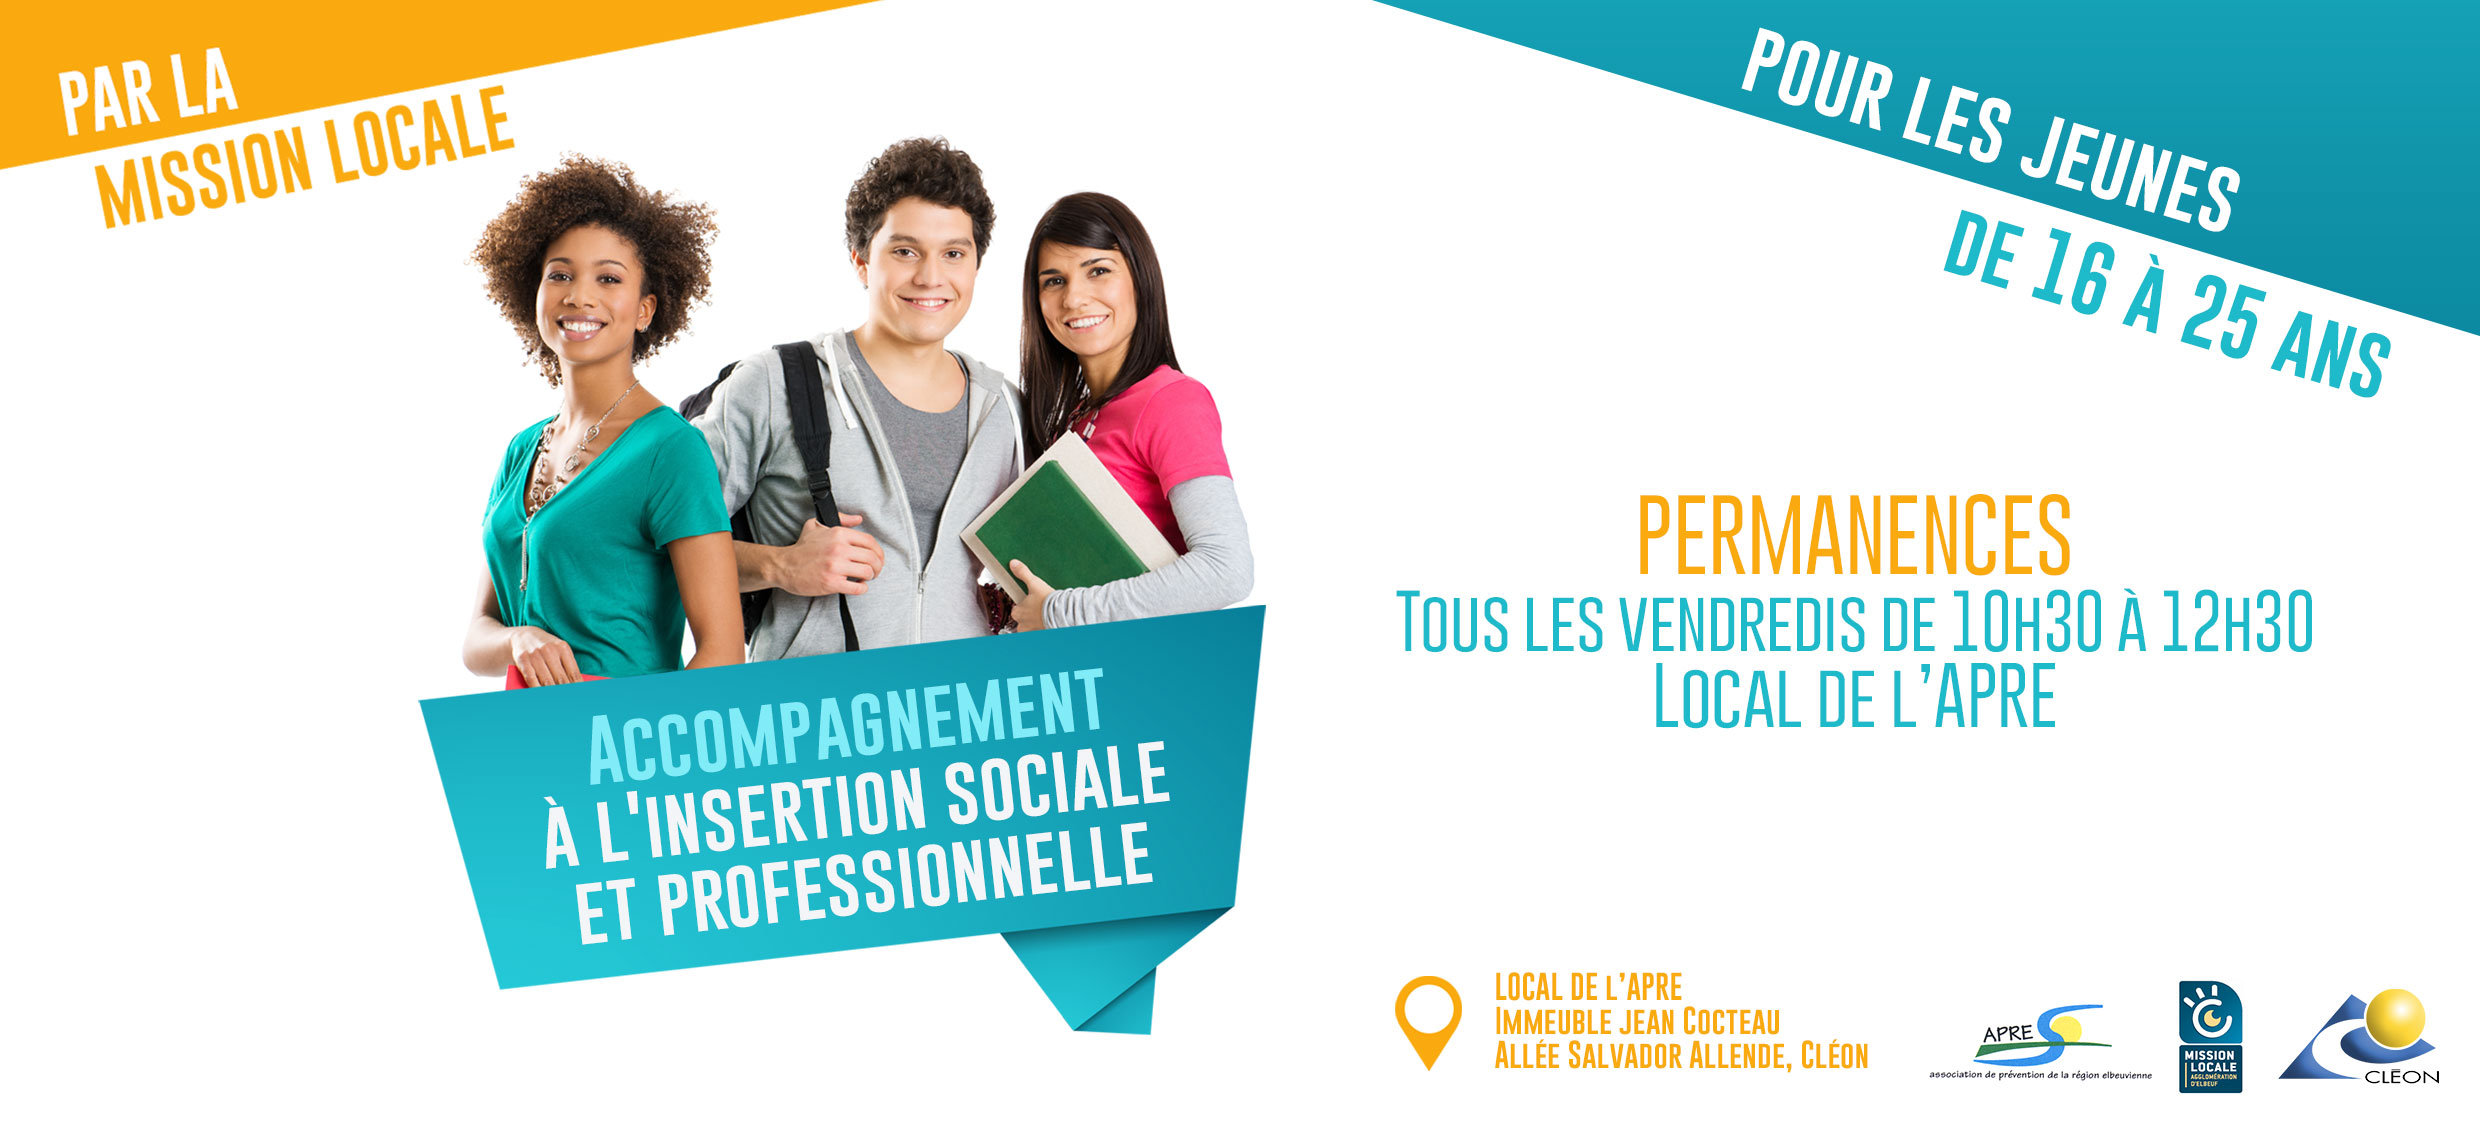 Aide Mairie 300 Euros 16 25 Ans Vacances Permanences - Insertion sociale et professionnelle des jeunes - Ville